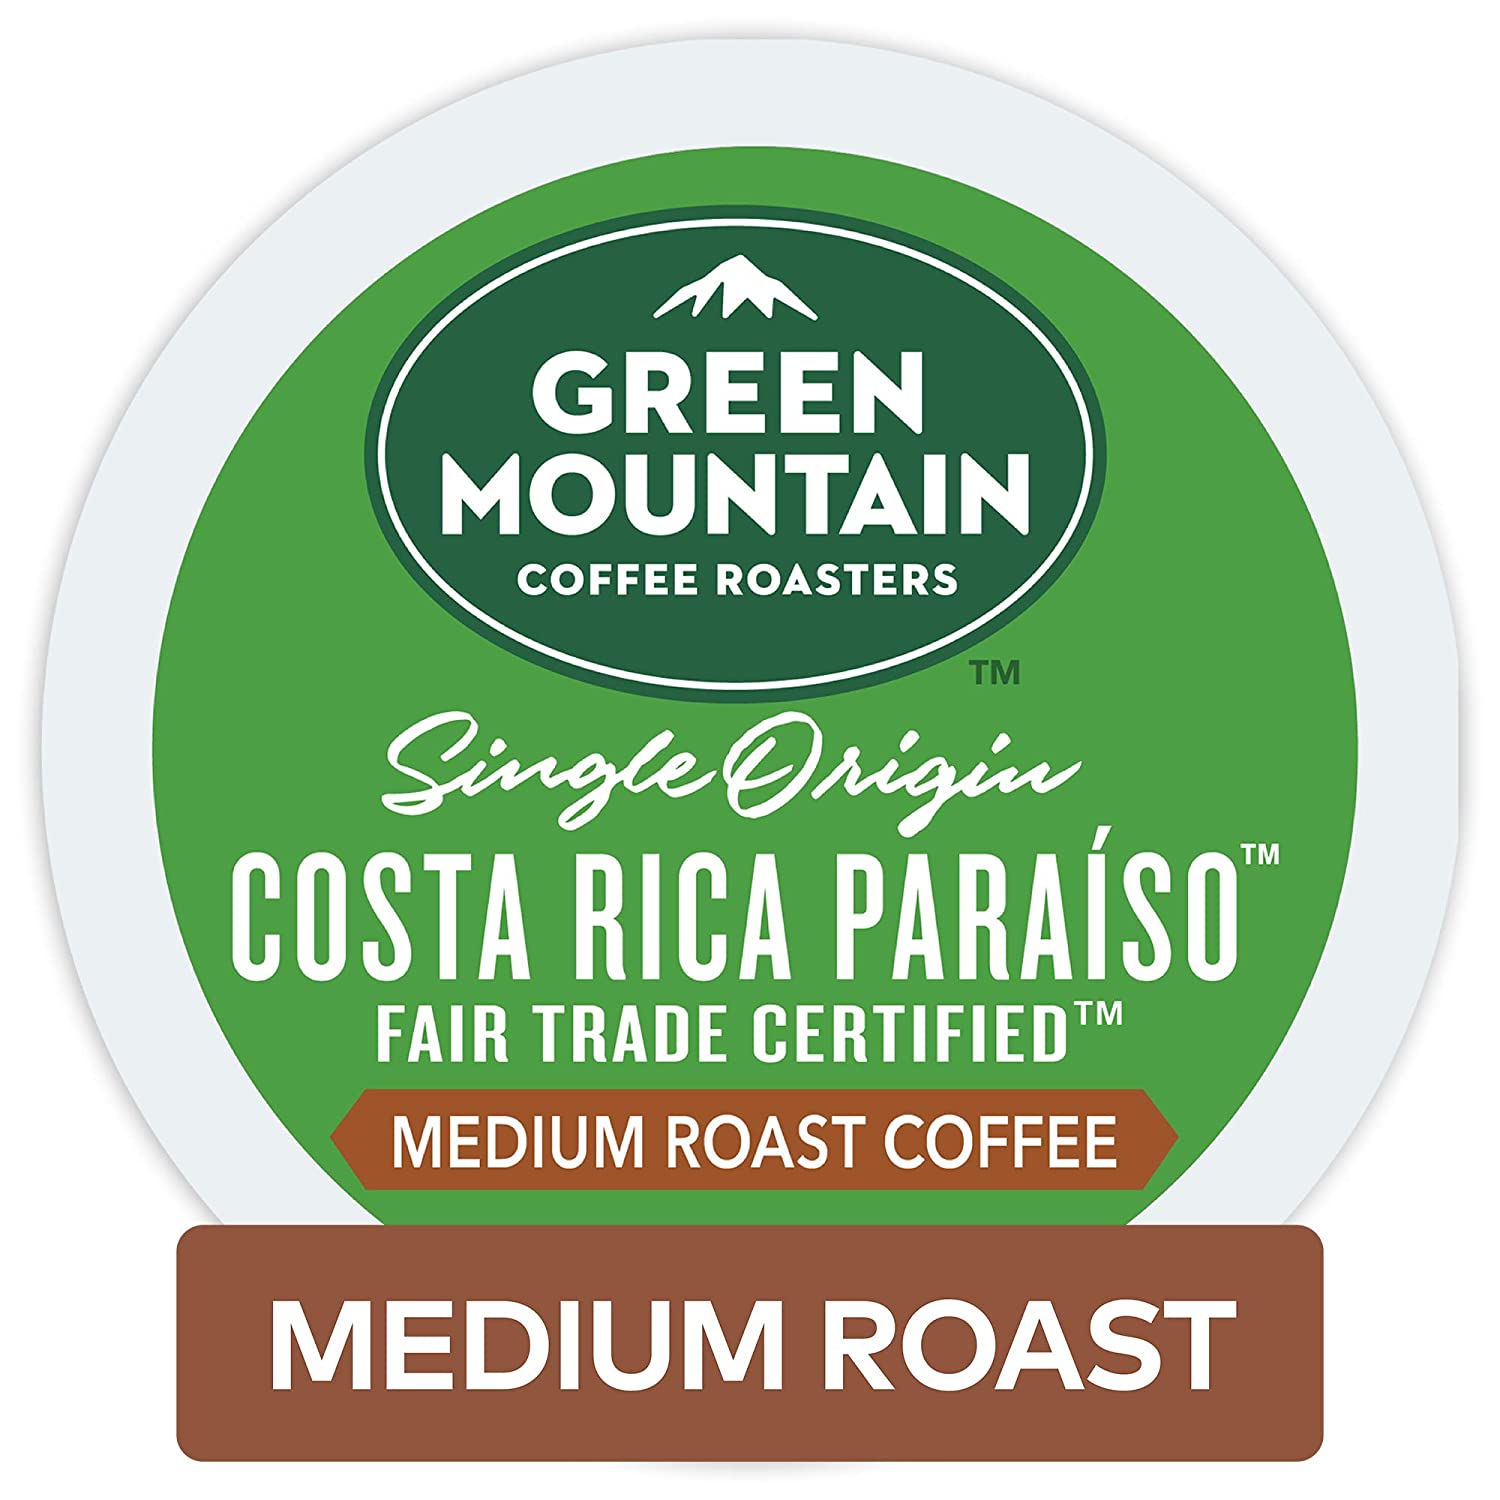 Green Mountain Coffee Roasters Costa Rica Paraiso